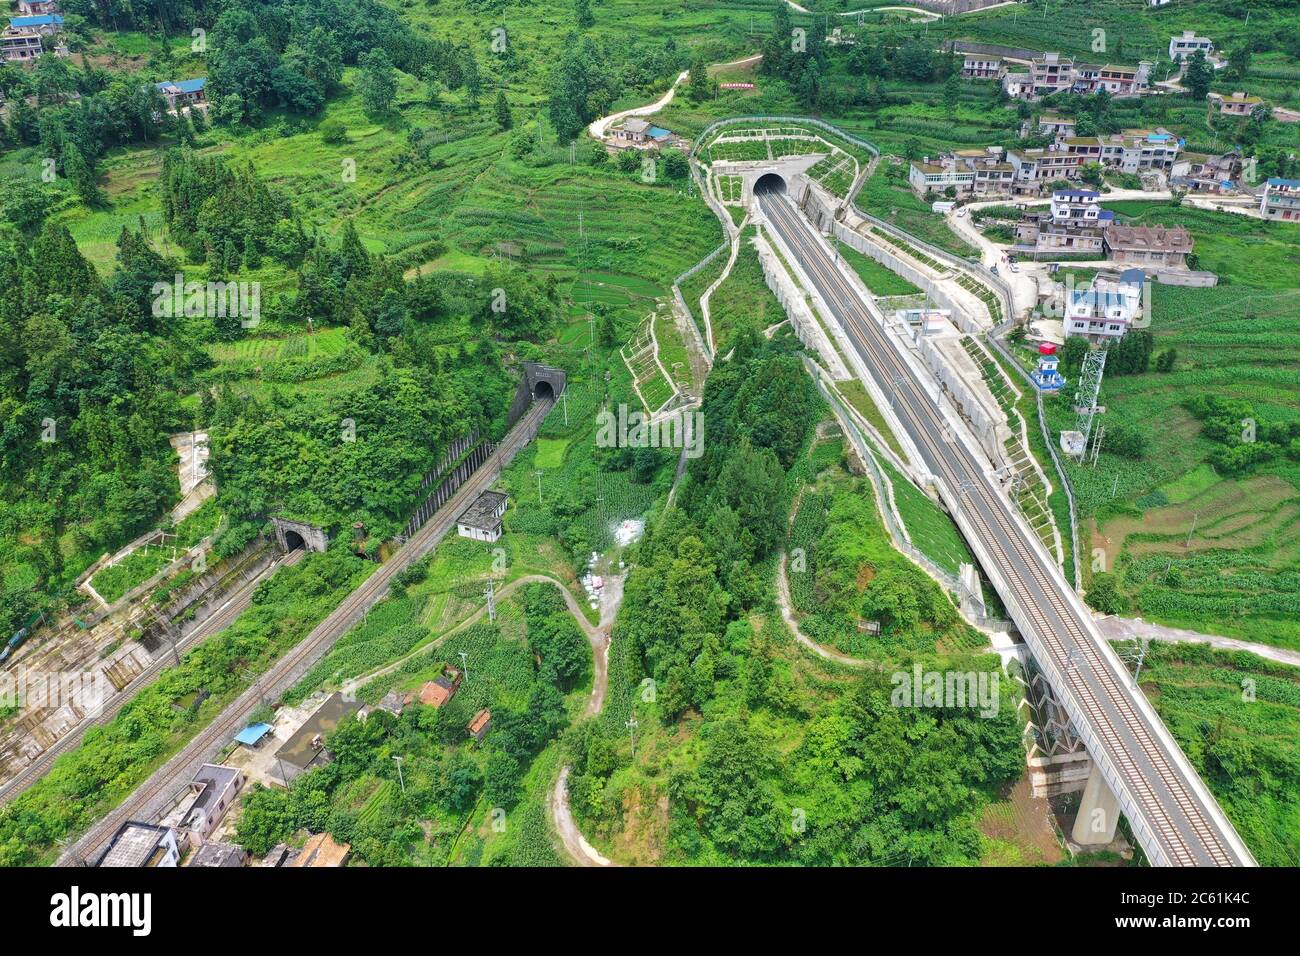 Liupanshui. Juli 2020. Luftaufnahme vom 6. Juli 2020 zeigt einen Eisenbahntunnel entlang der Anshun-Liupanshui-Eisenbahn in der südwestlichen chinesischen Provinz Guizhou. Die Intercity-Bahn Anshun-Liupanshui mit einer Geschwindigkeit von 250 km/h wird zur Eröffnung vorbereitet. Die Eisenbahn wird die Fahrzeit zwischen Guiyang und Liupanshui von den aktuellen 3.5 Stunden auf etwa 1 Stunde verkürzen, und Liupanshui City wird vollständig mit dem nationalen Hochgeschwindigkeitsbahnnetz verbunden sein. Quelle: Liu Xu/Xinhua/Alamy Live News Stockfoto